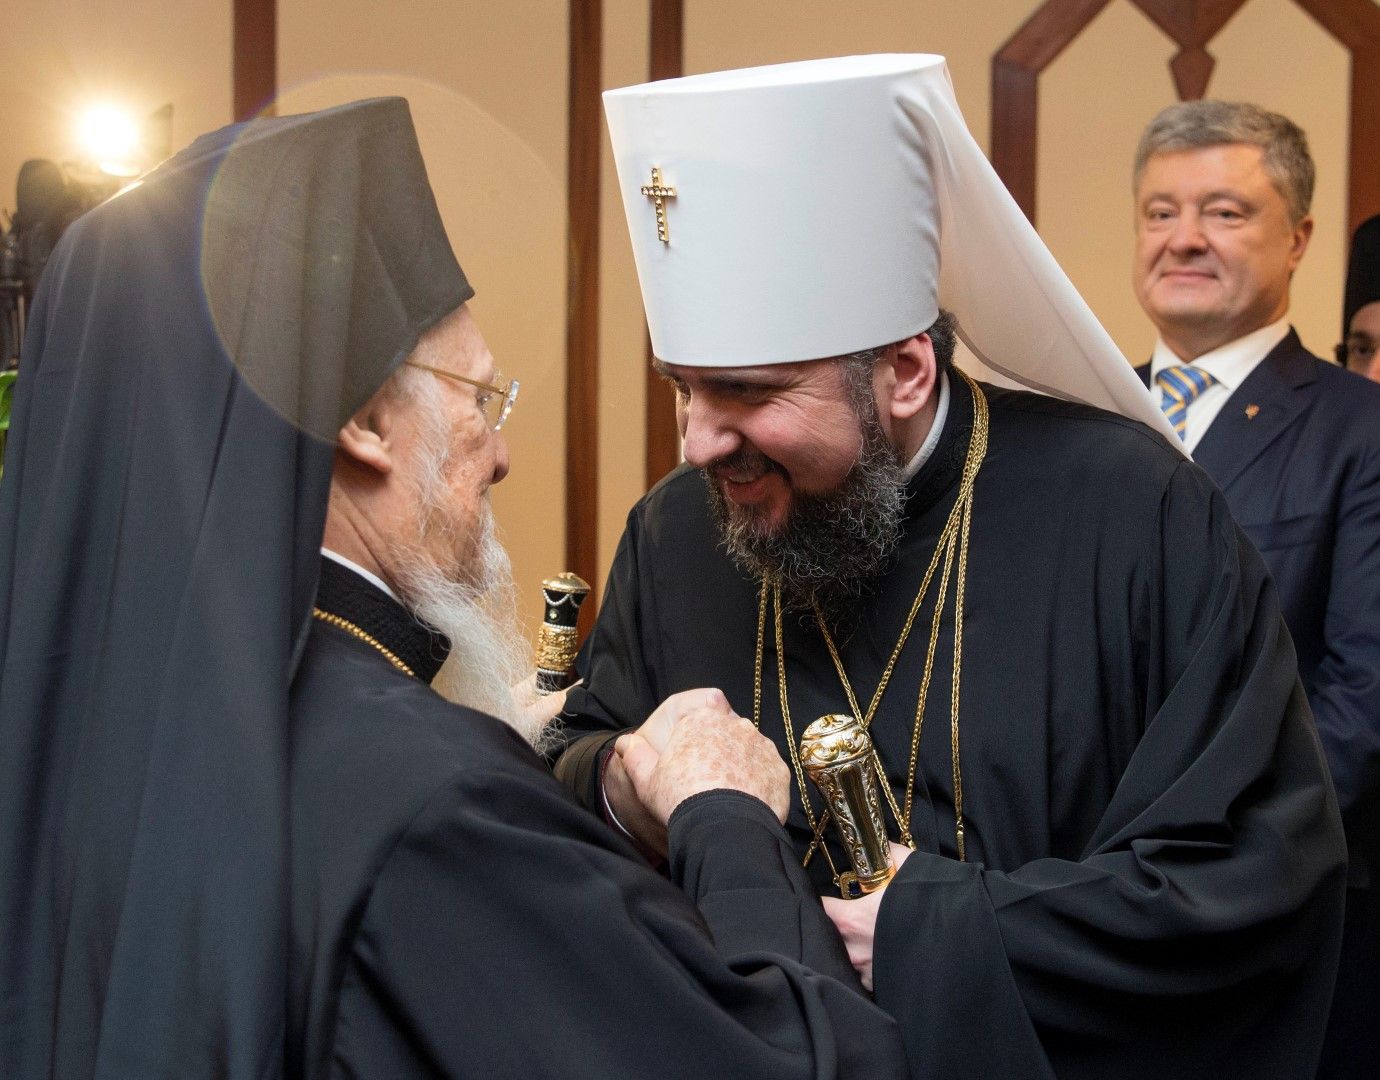 Вартоломей посрещна главата на украинската църква - митрополит Епифаний, в присъствието на президента Порошенко